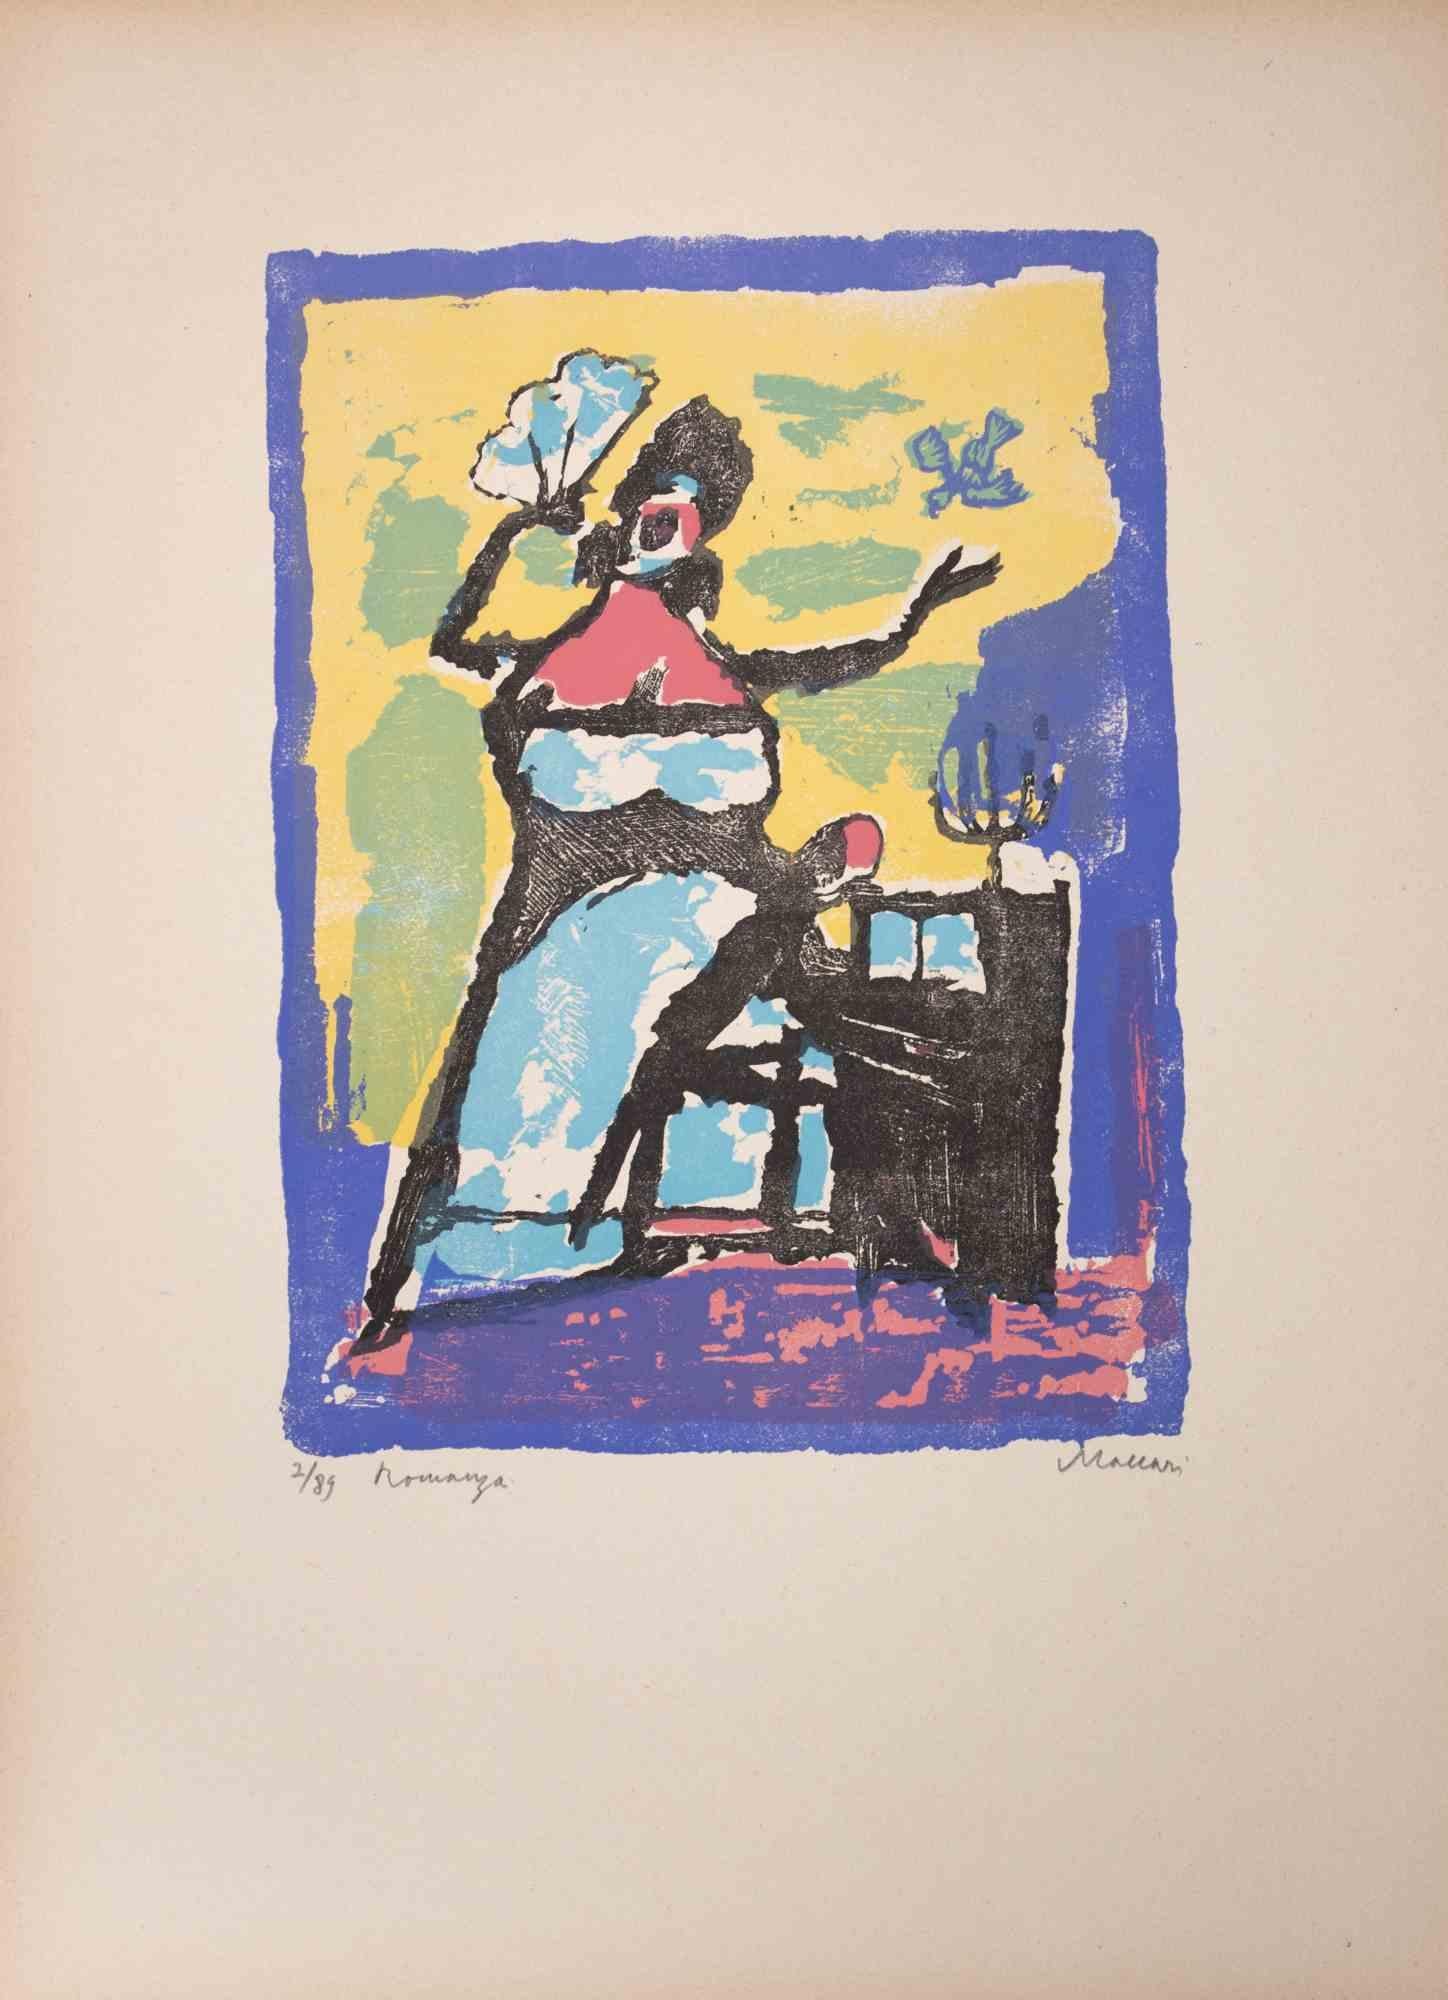 Romance ist ein Kunstwerk von Mino Maccari (1924-1989) aus der Mitte des 20. Jahrhunderts.

Farbiger Holzschnitt auf Papier. Unten handsigniert, nummeriert 2/89 Exemplare und am linken Rand betitelt.

Gute Bedingungen.

Mino Maccari (Siena,